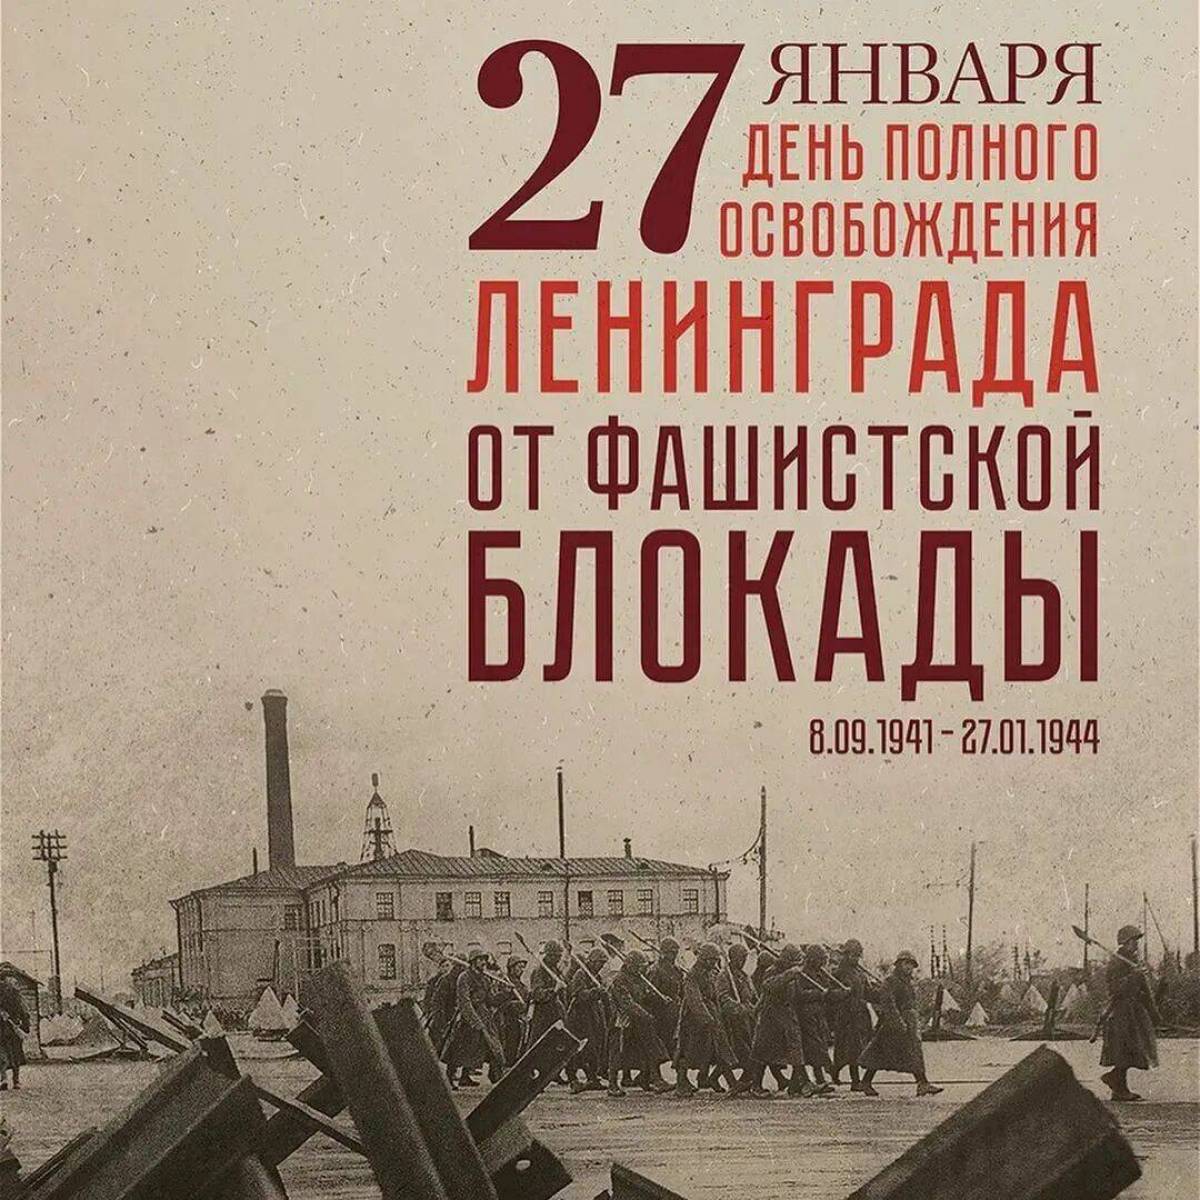 Снятие блокады ленинграда #20